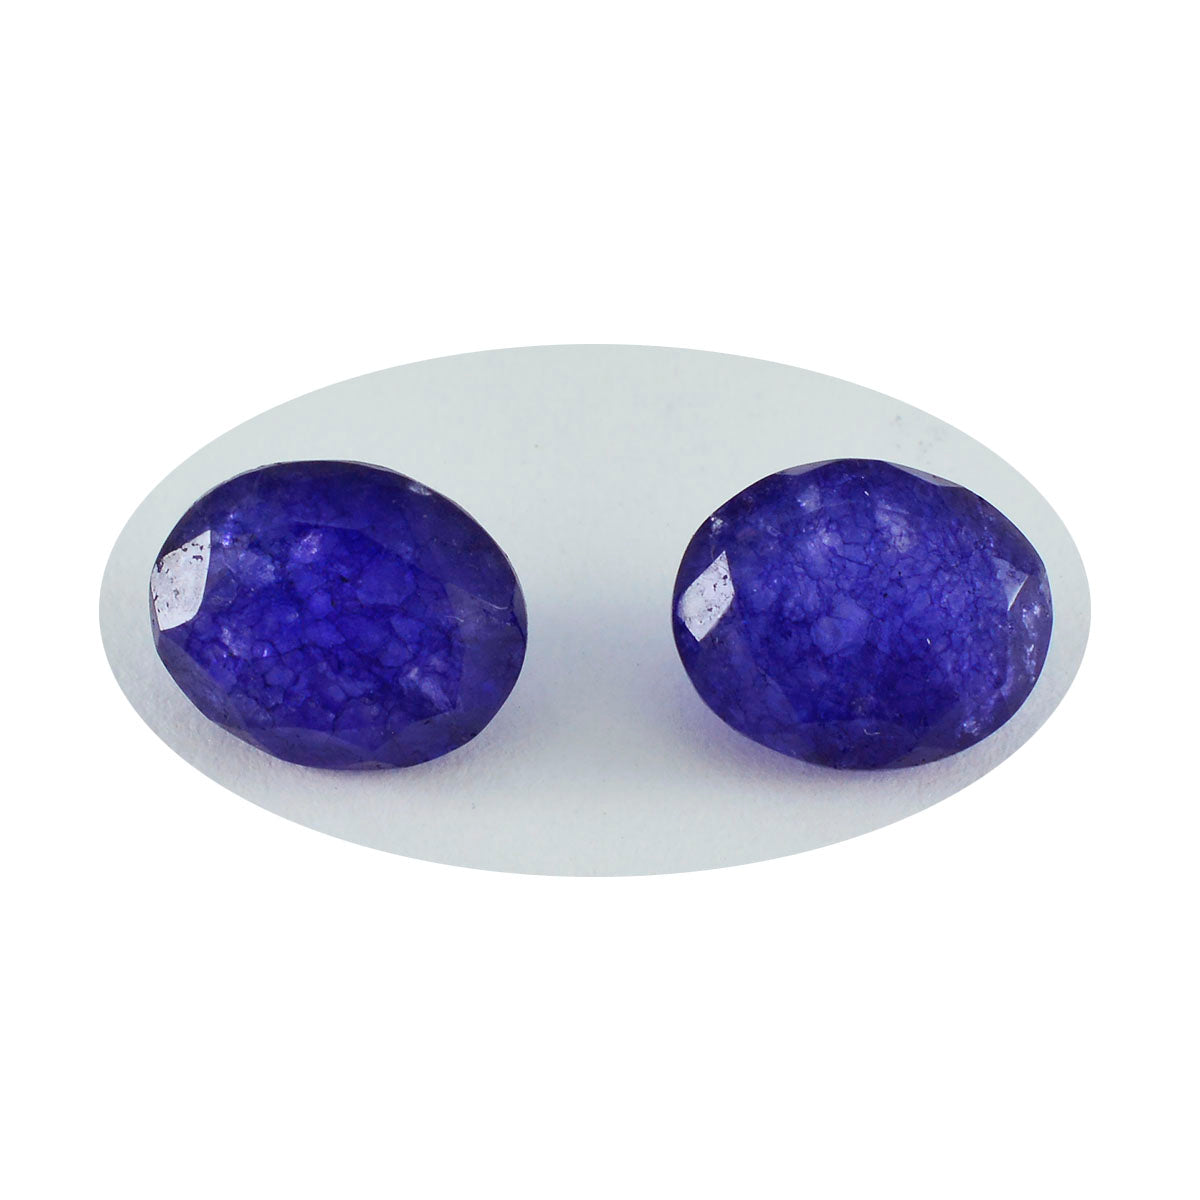 Riyogems 1 Stück echter blauer Jaspis, facettiert, 7 x 9 mm, ovale Form, attraktive Qualitätsedelsteine